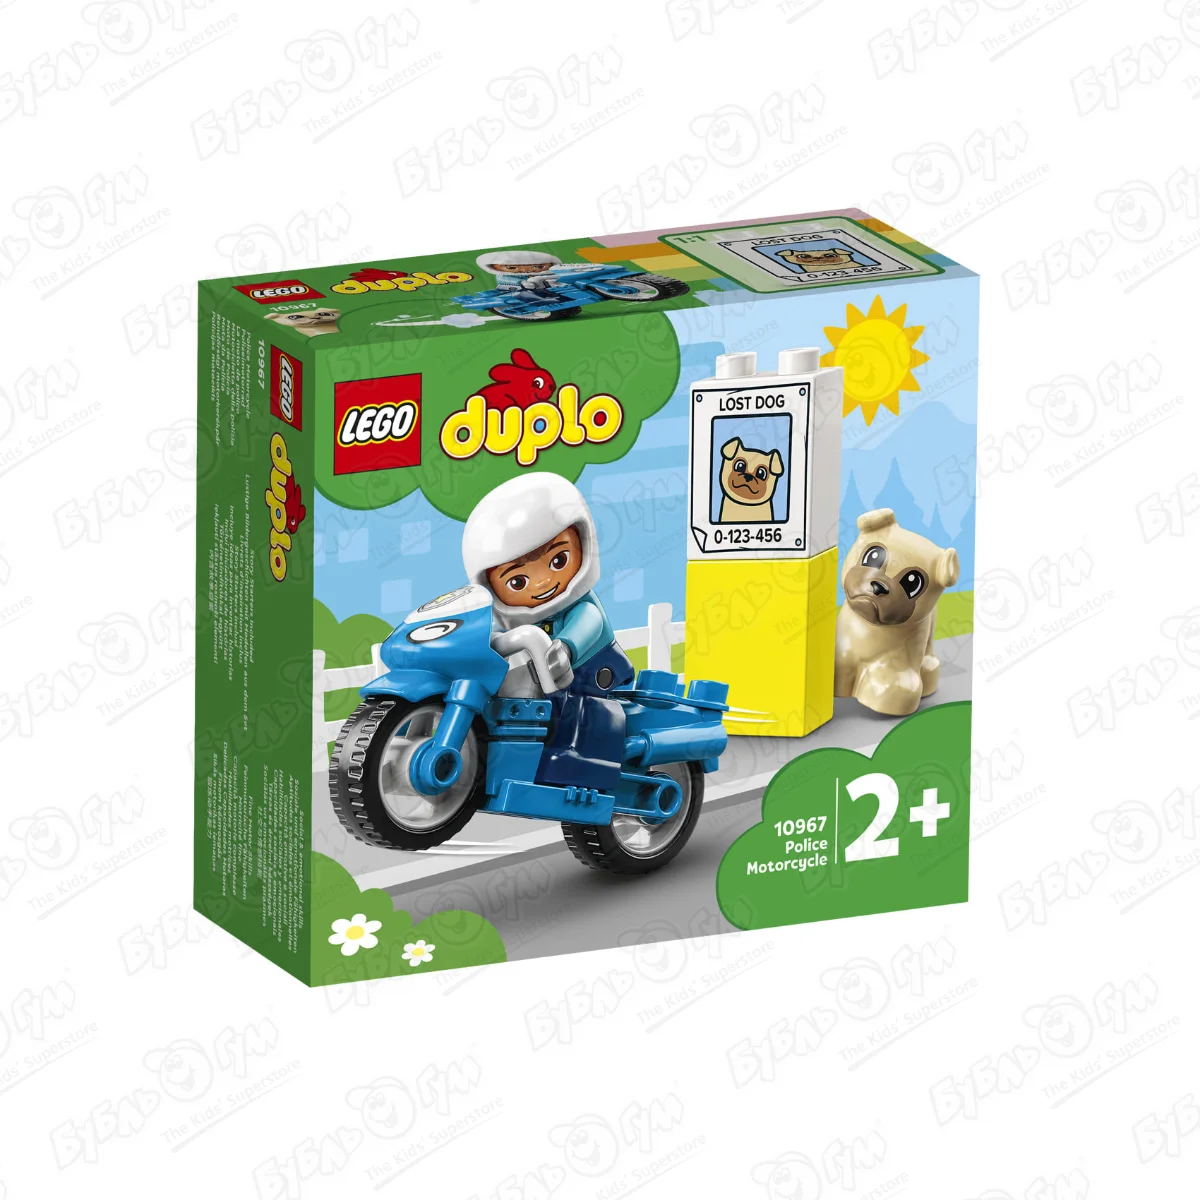 Конструктор LEGO duplo «Полицейский мотоцикл» с 2лет